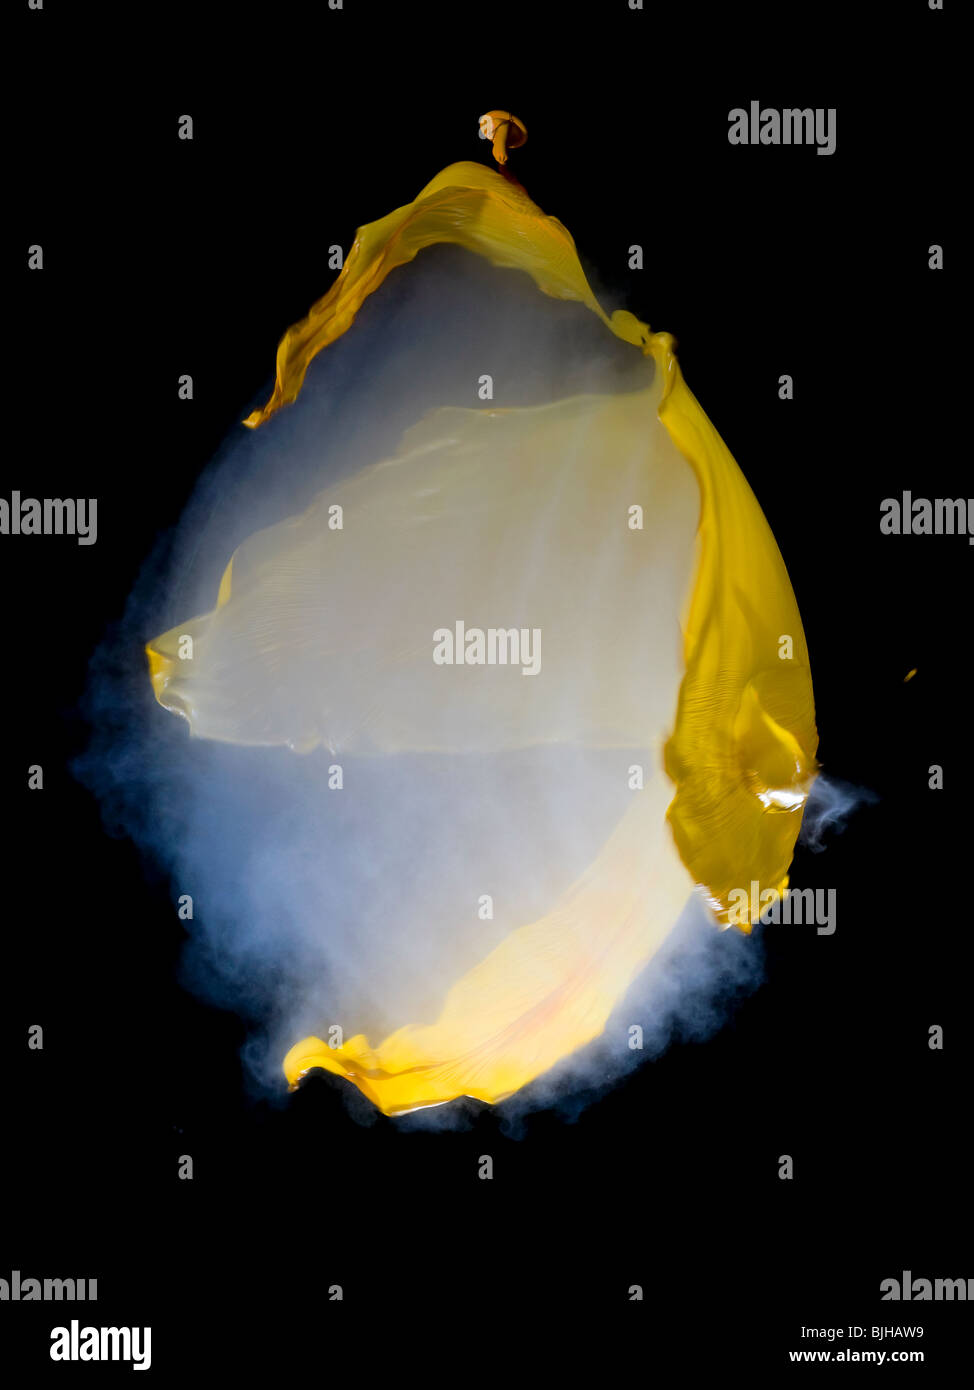 Un ballon jaune rempli de fumée lors de l'éclatement tourné avec une carabine à air. Visible de l'onde sonore Banque D'Images